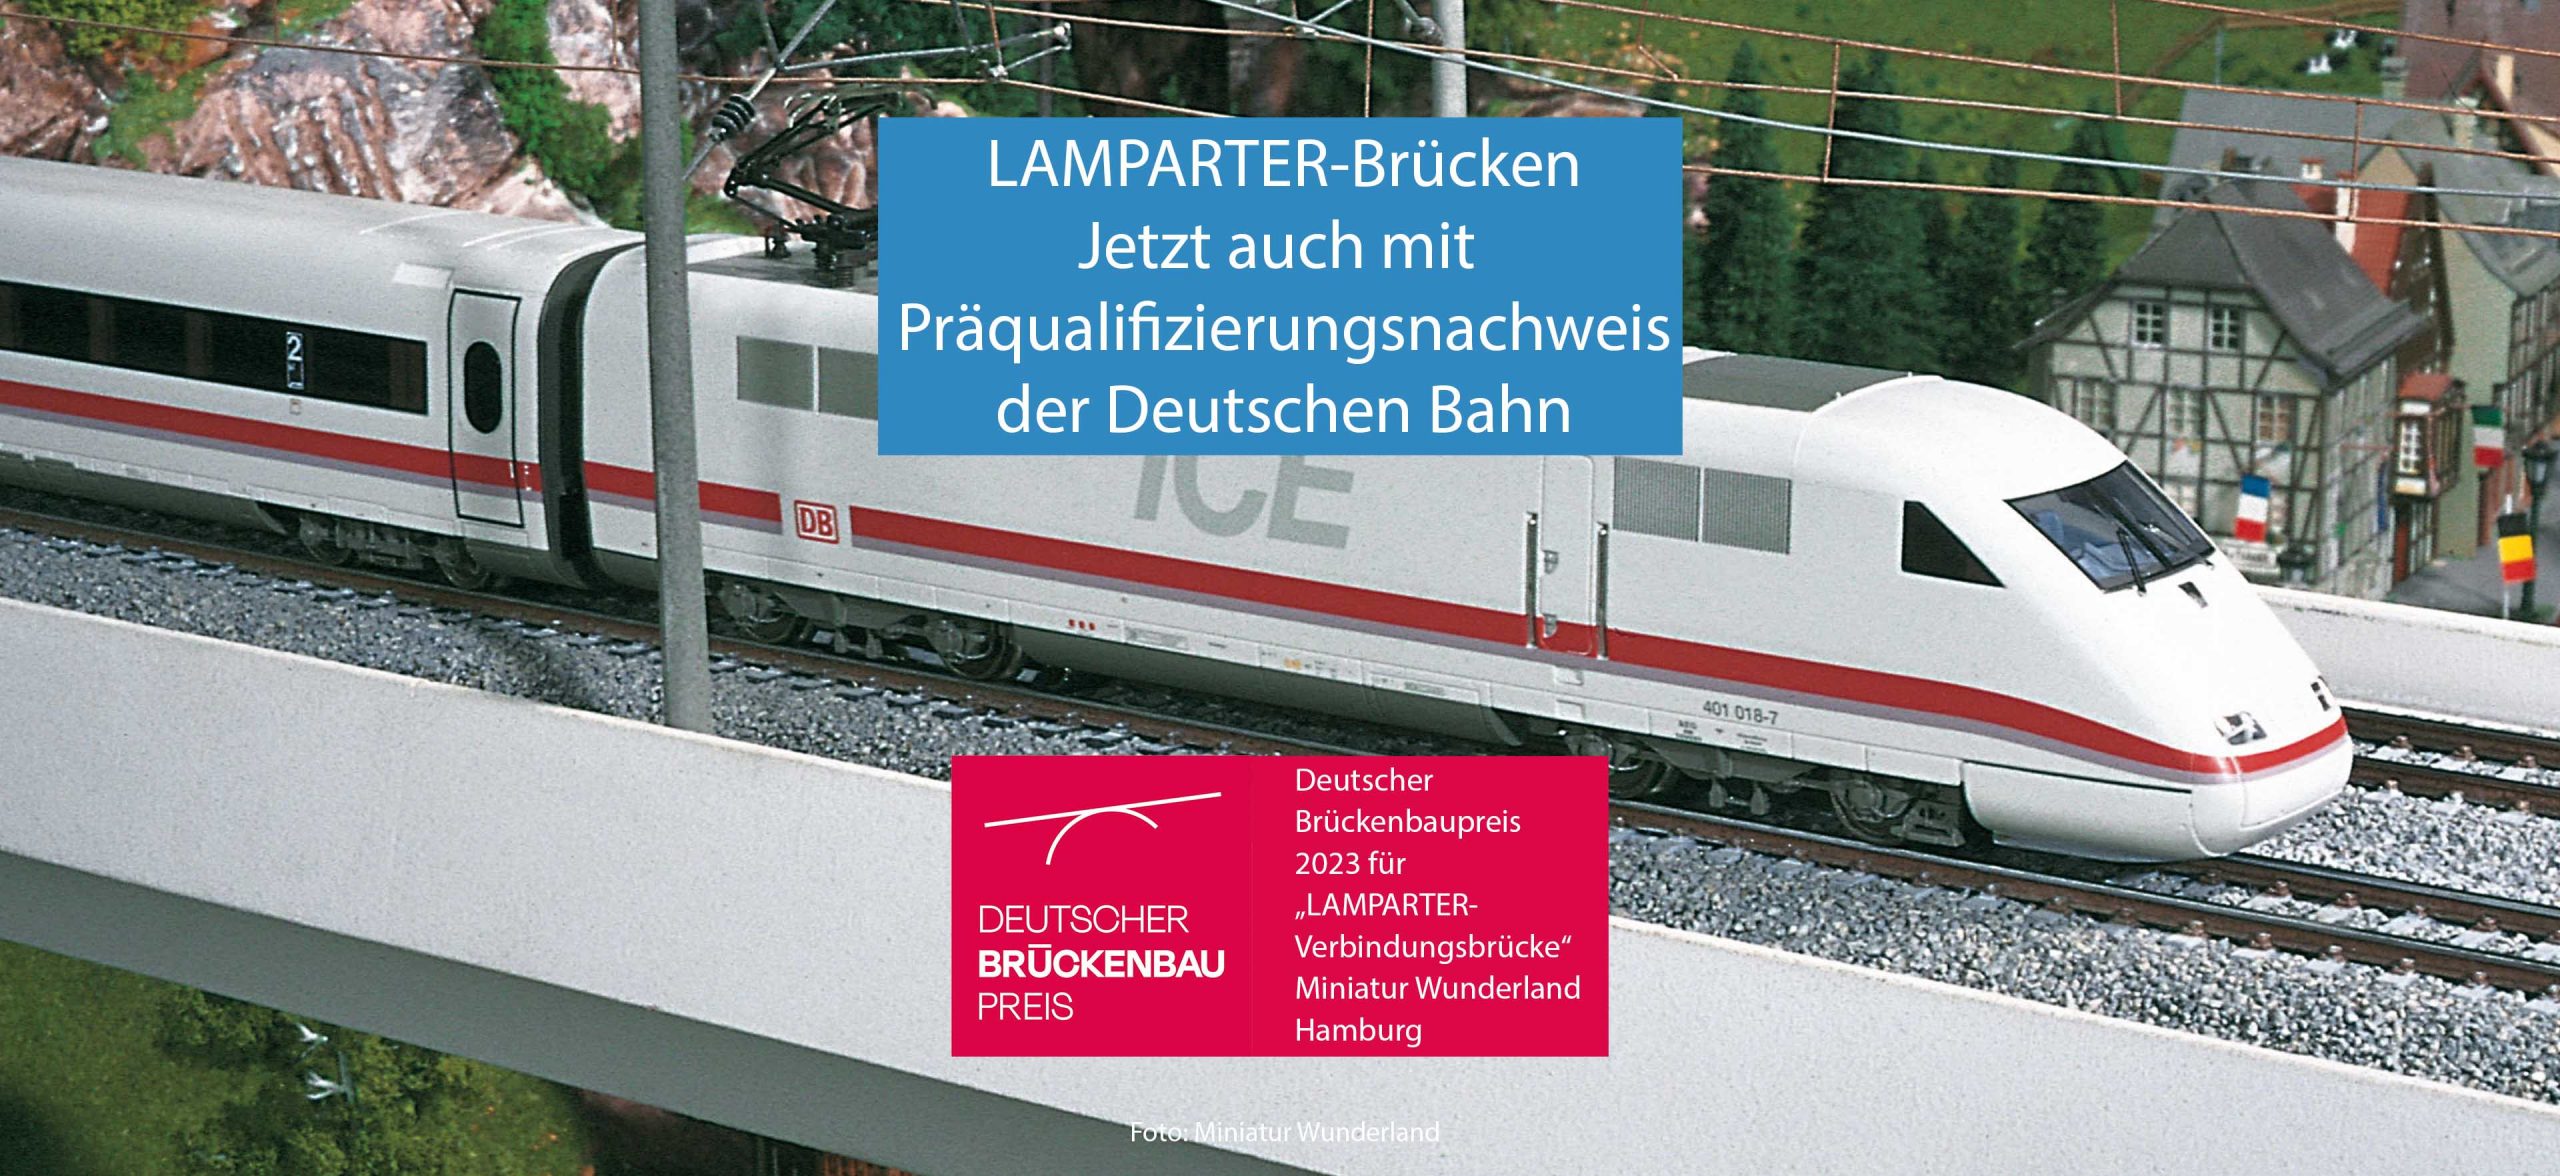 Präqualifizierung, Präqualifizierungsnachweis der Deutschen Bahn. Deutsche Bahn.